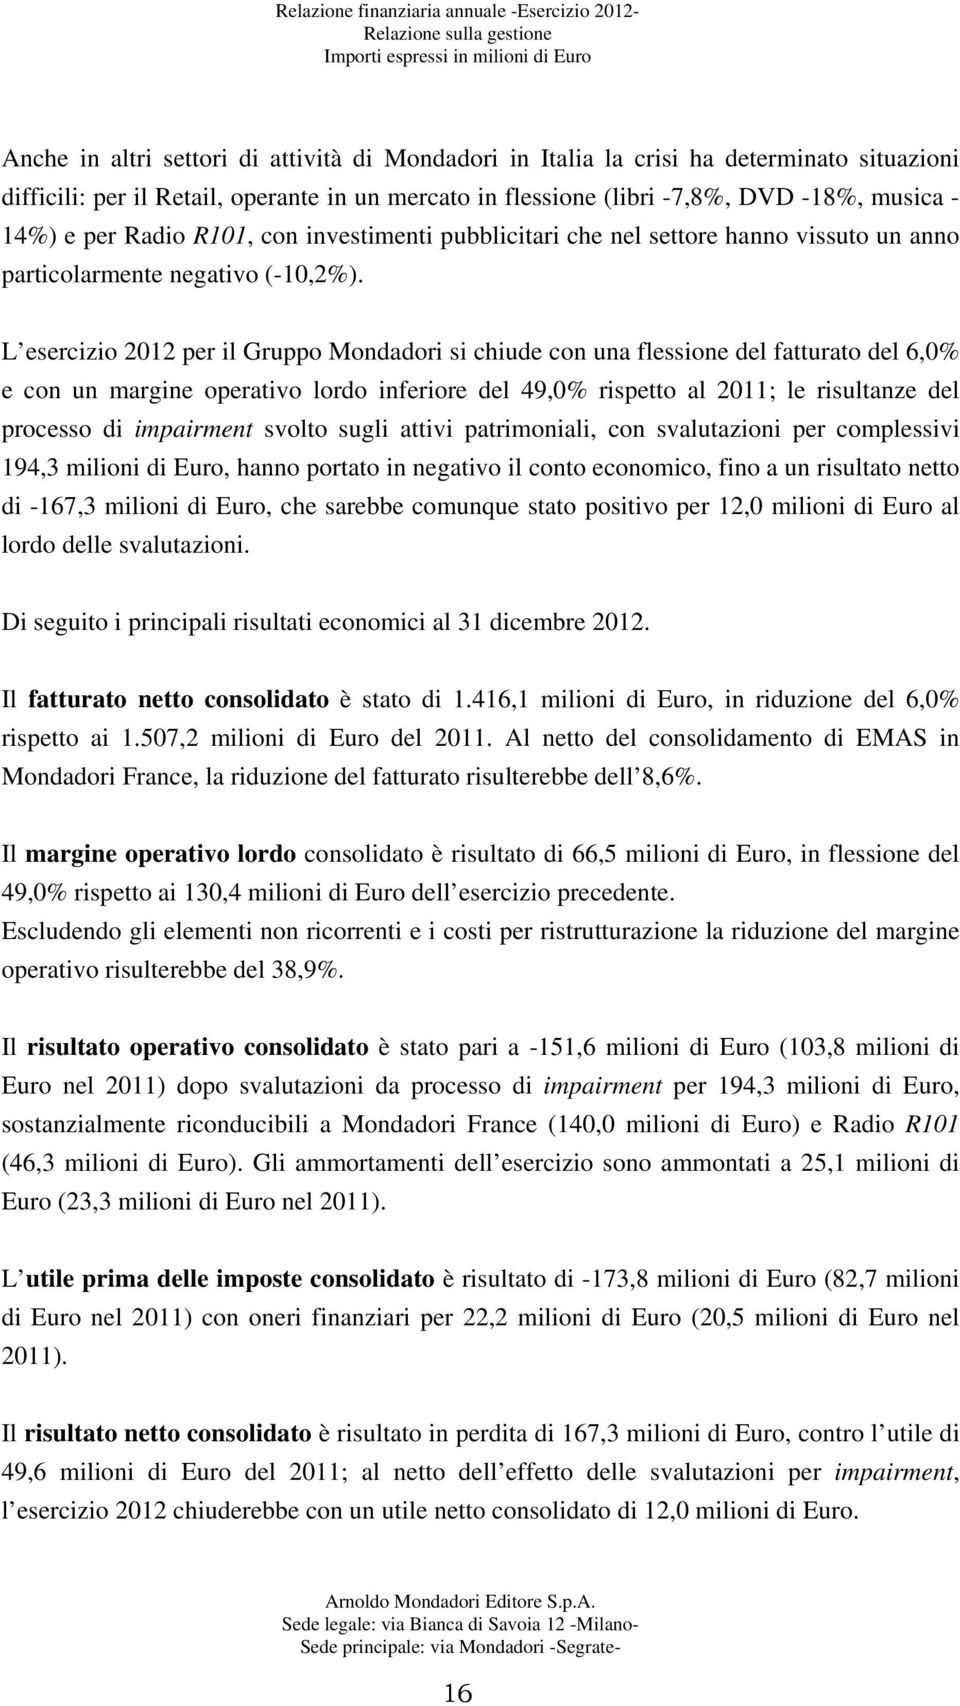 L esercizio 2012 per il Gruppo Mondadori si chiude con una flessione del fatturato del 6,0% e con un margine operativo lordo inferiore del 49,0% rispetto al 2011; le risultanze del processo di